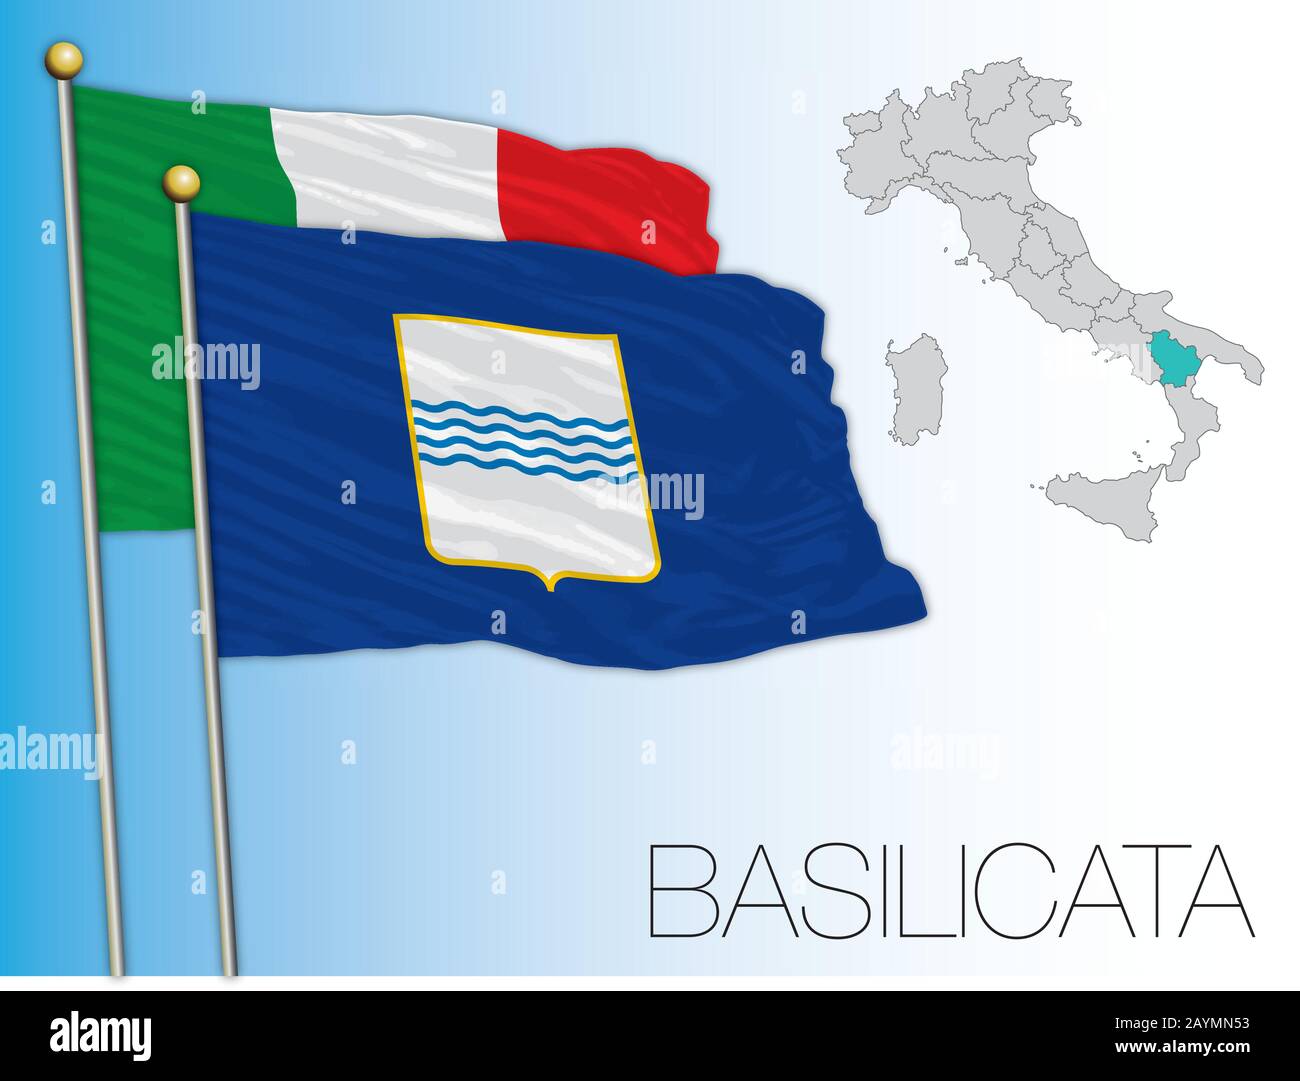 Basilicata bandiera e mappa ufficiale regionale, Italia, illustrazione vettoriale Illustrazione Vettoriale